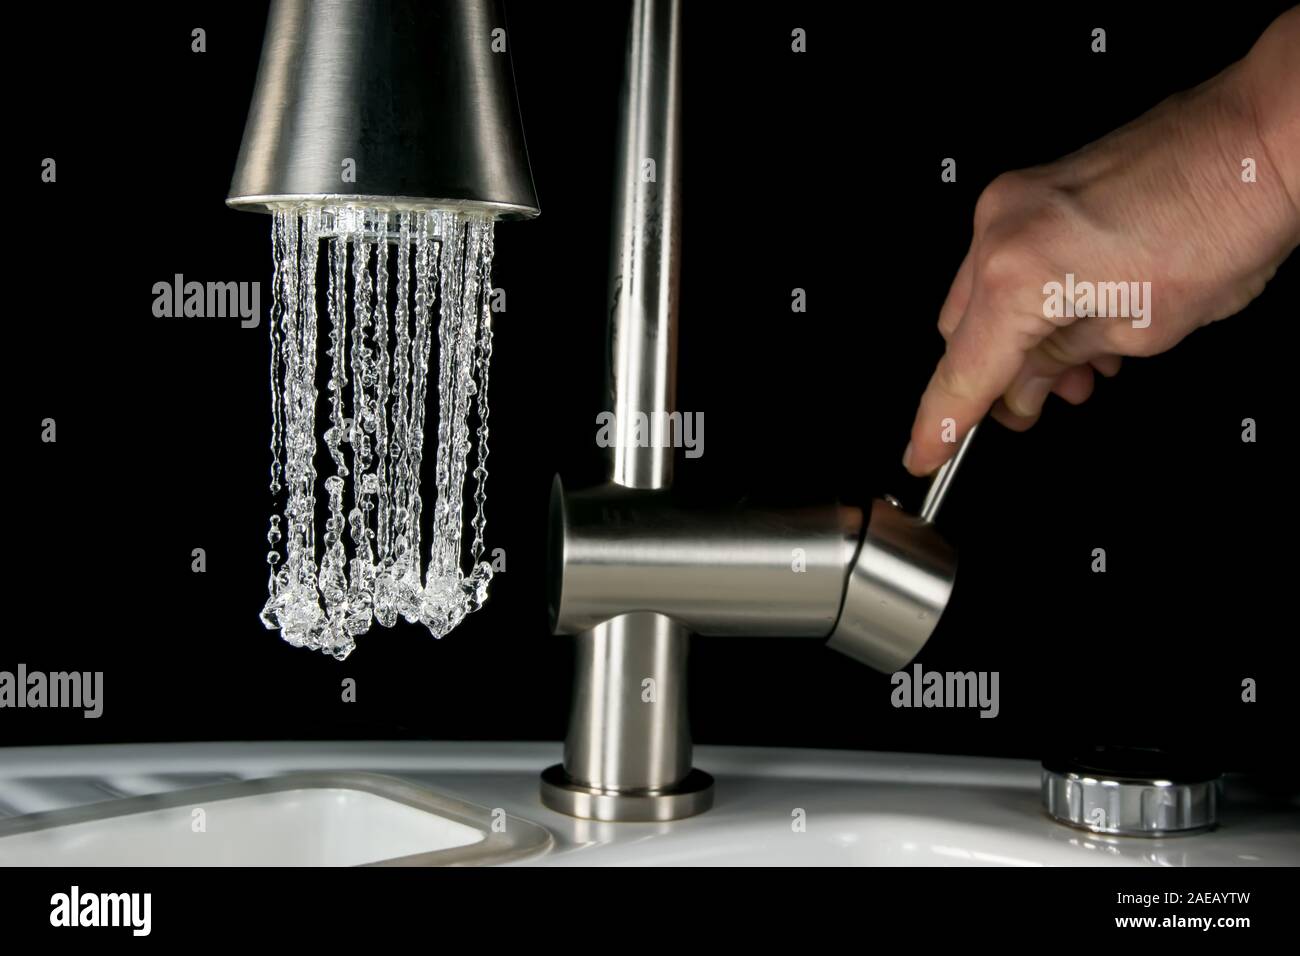 L'eau qui sort d'un robinet - haute vitesse libre Banque D'Images